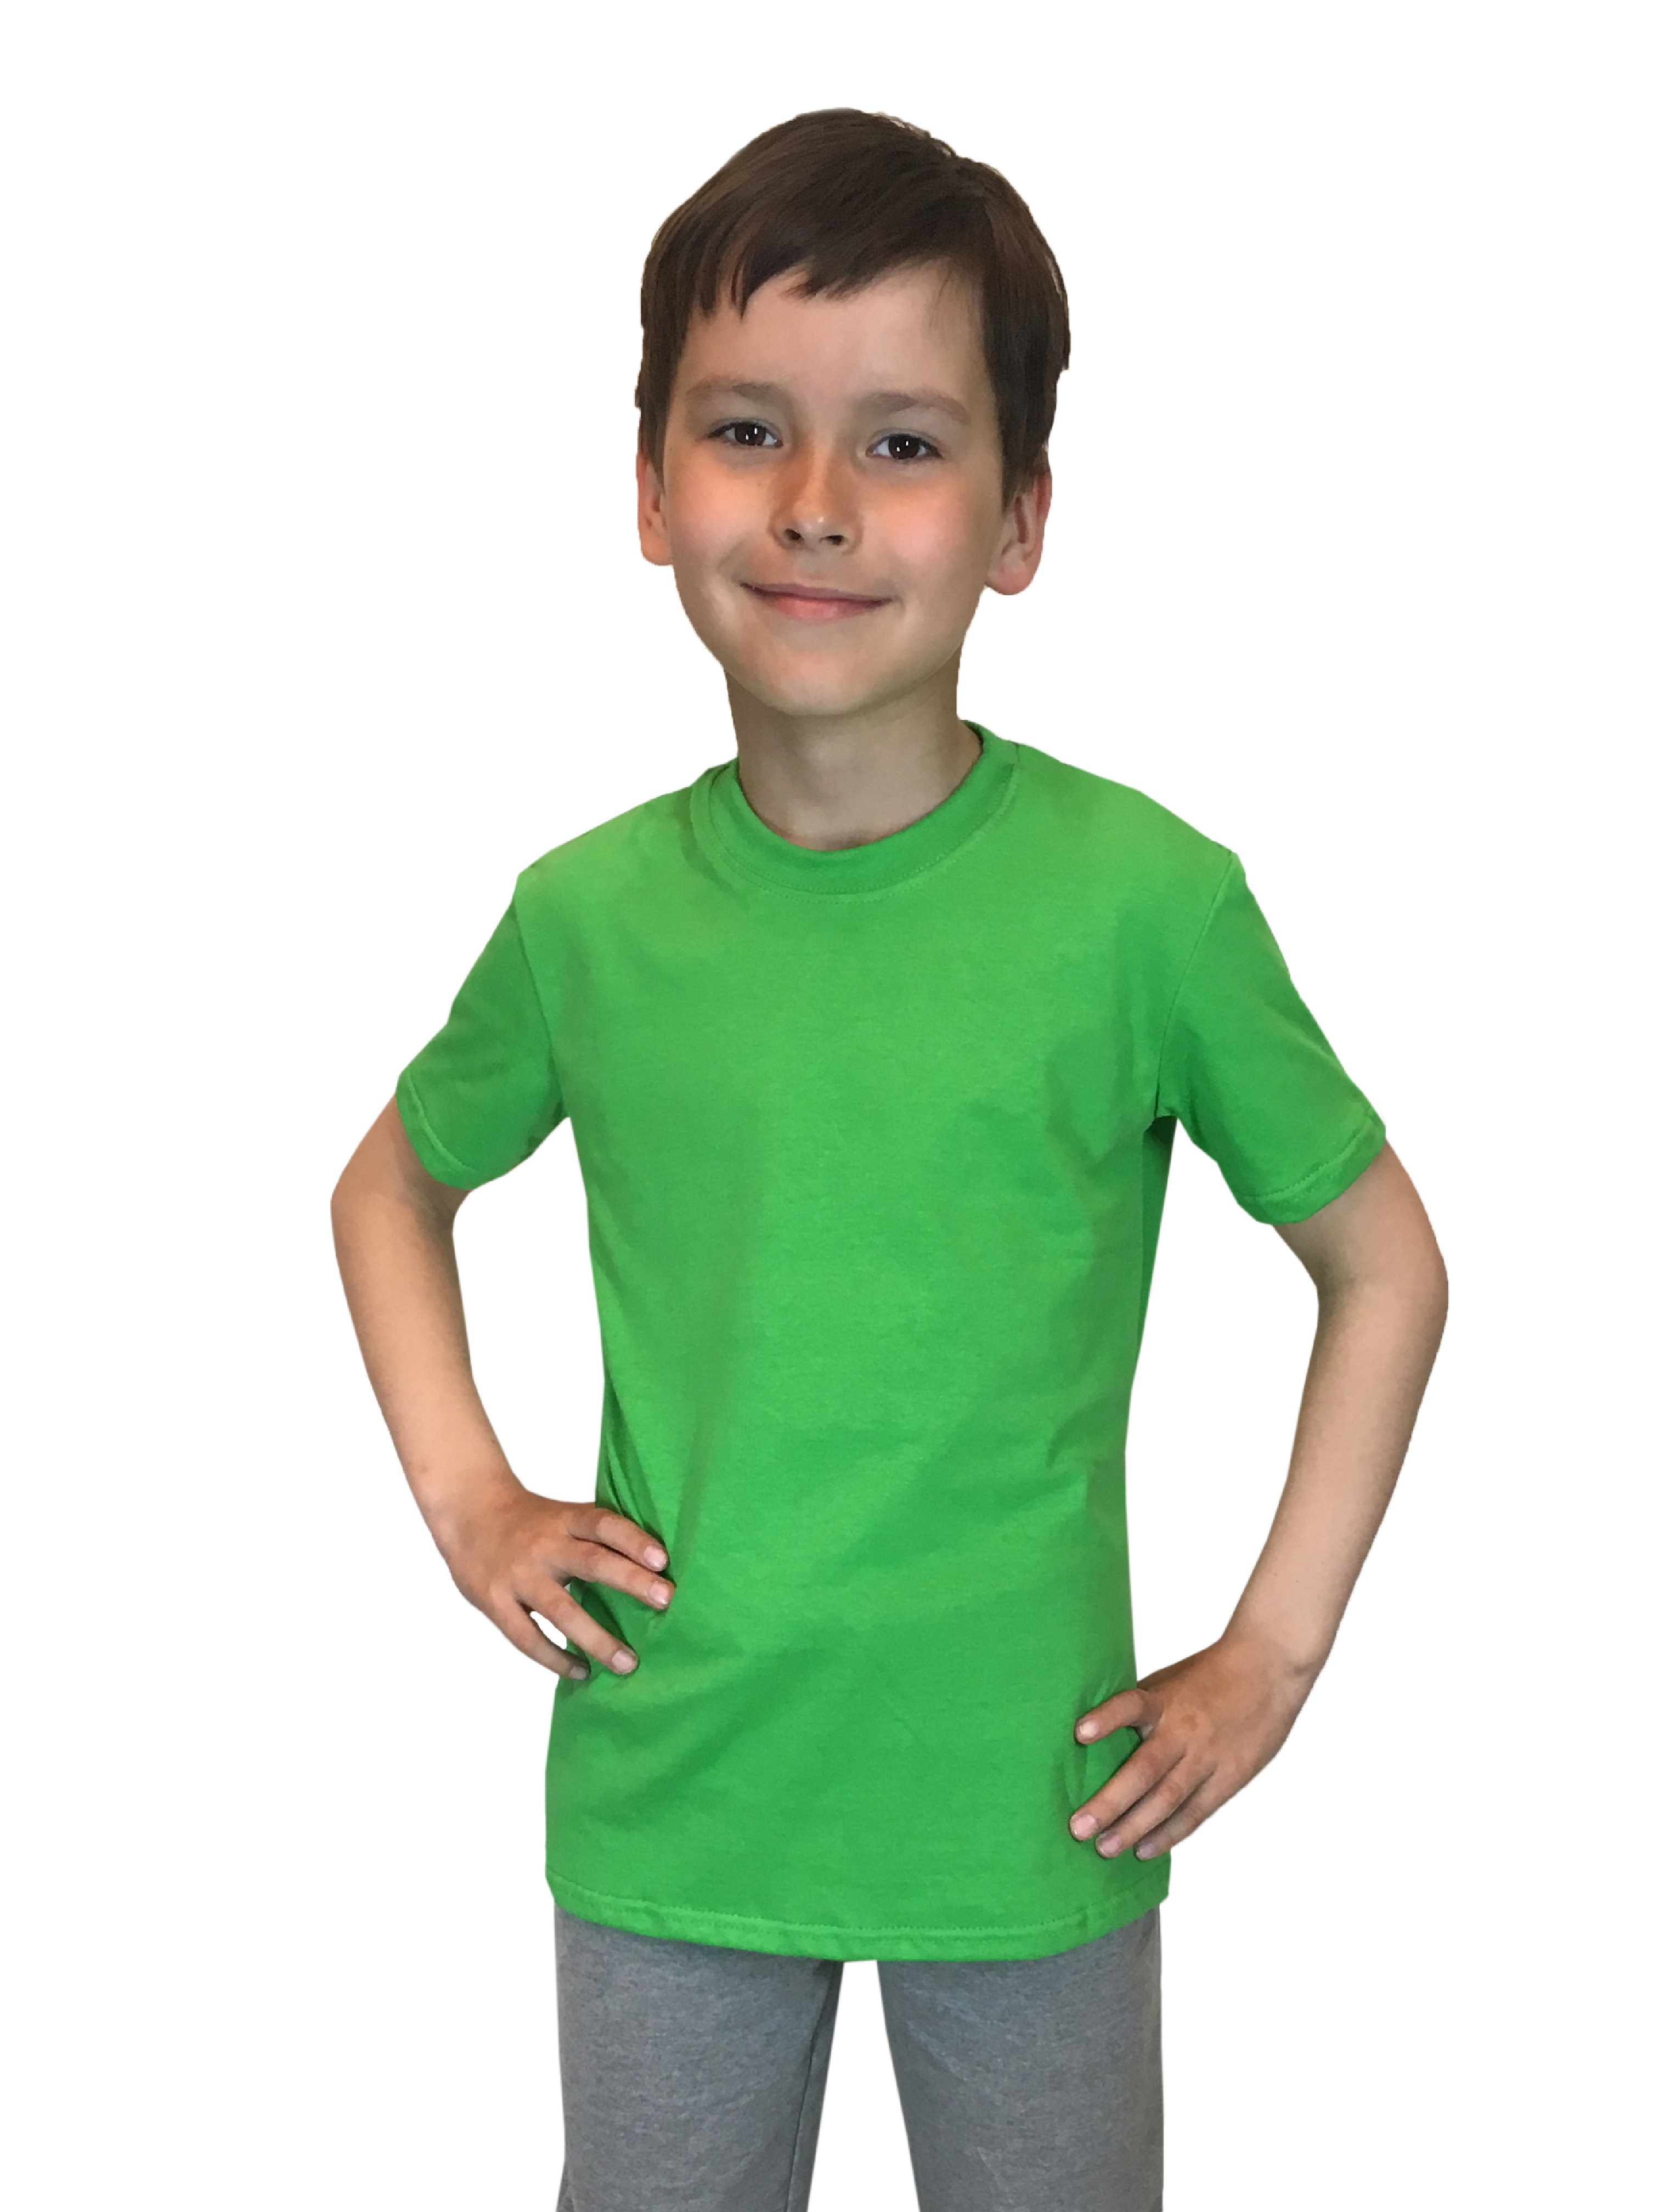 Футболка детская Детрик, зеленый размер 110, Ф-1-64